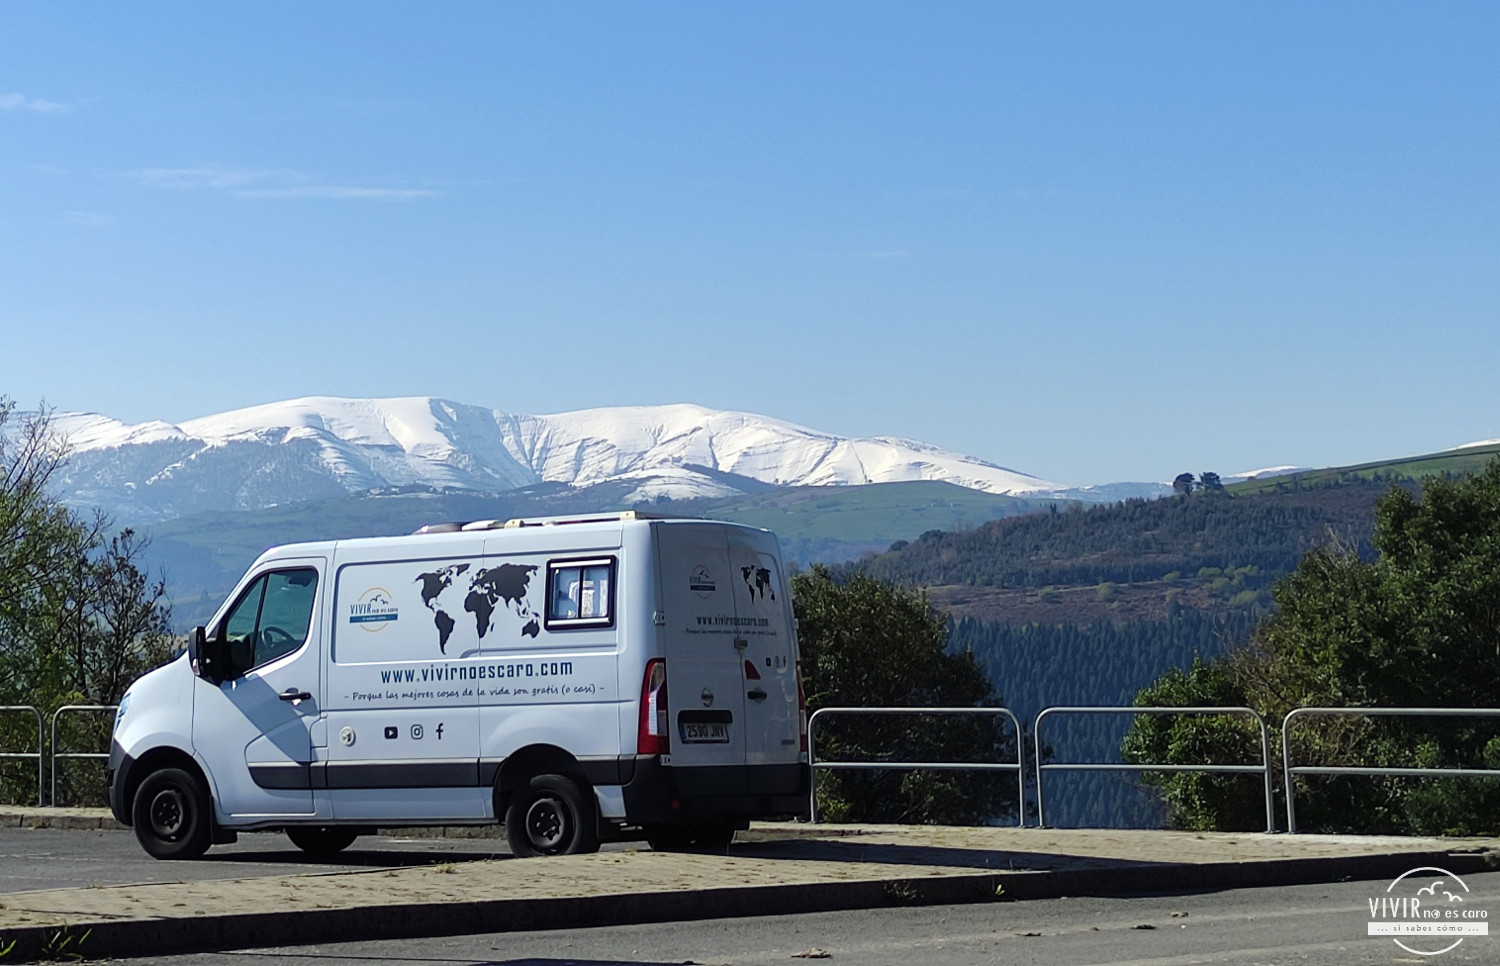 Pernocta en furgoneta camper en alta montaña en el País Vasco